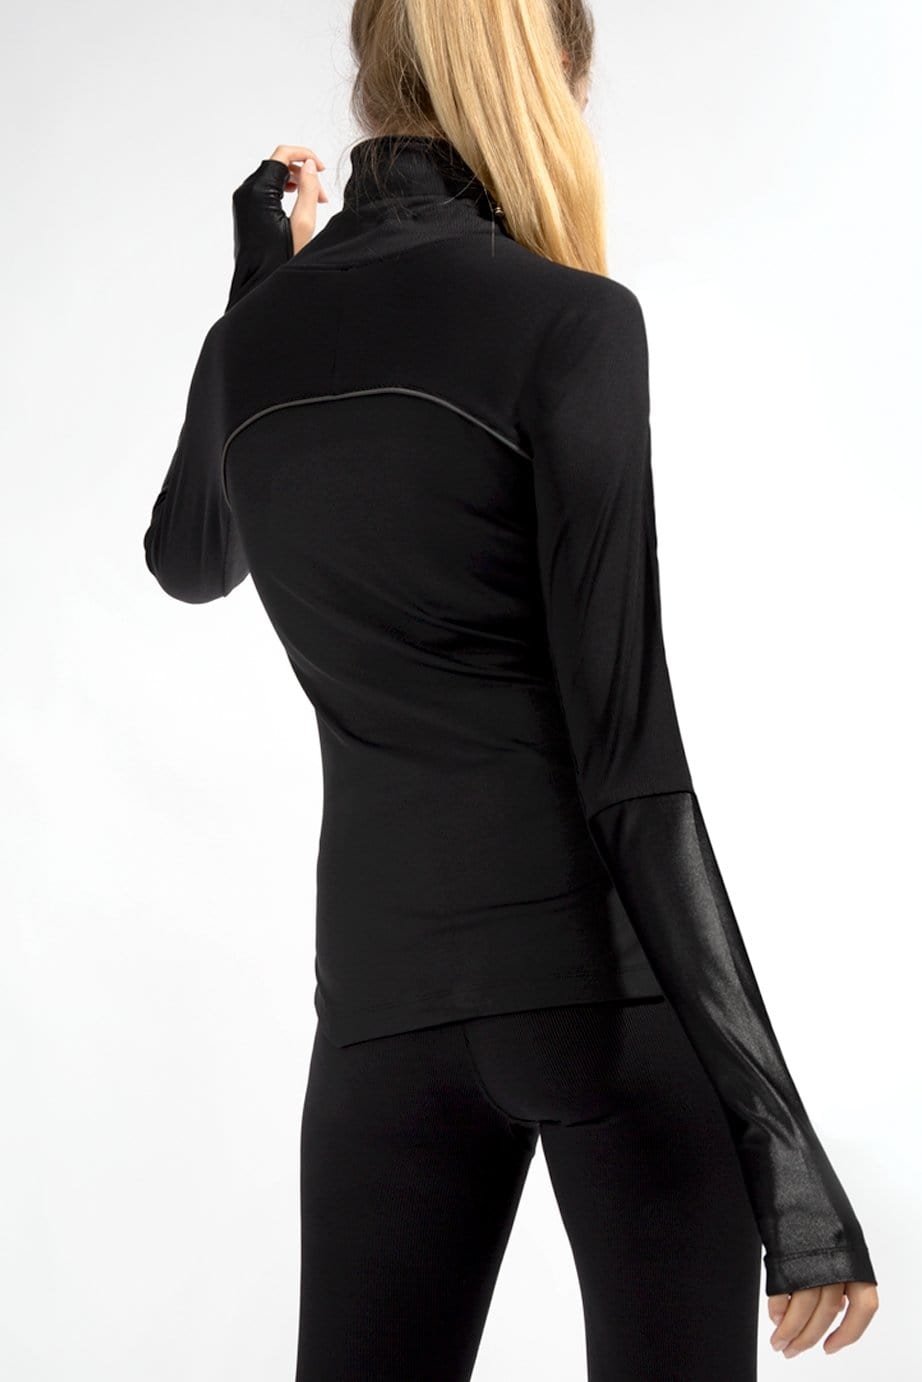 XRT black sport jacket  for women